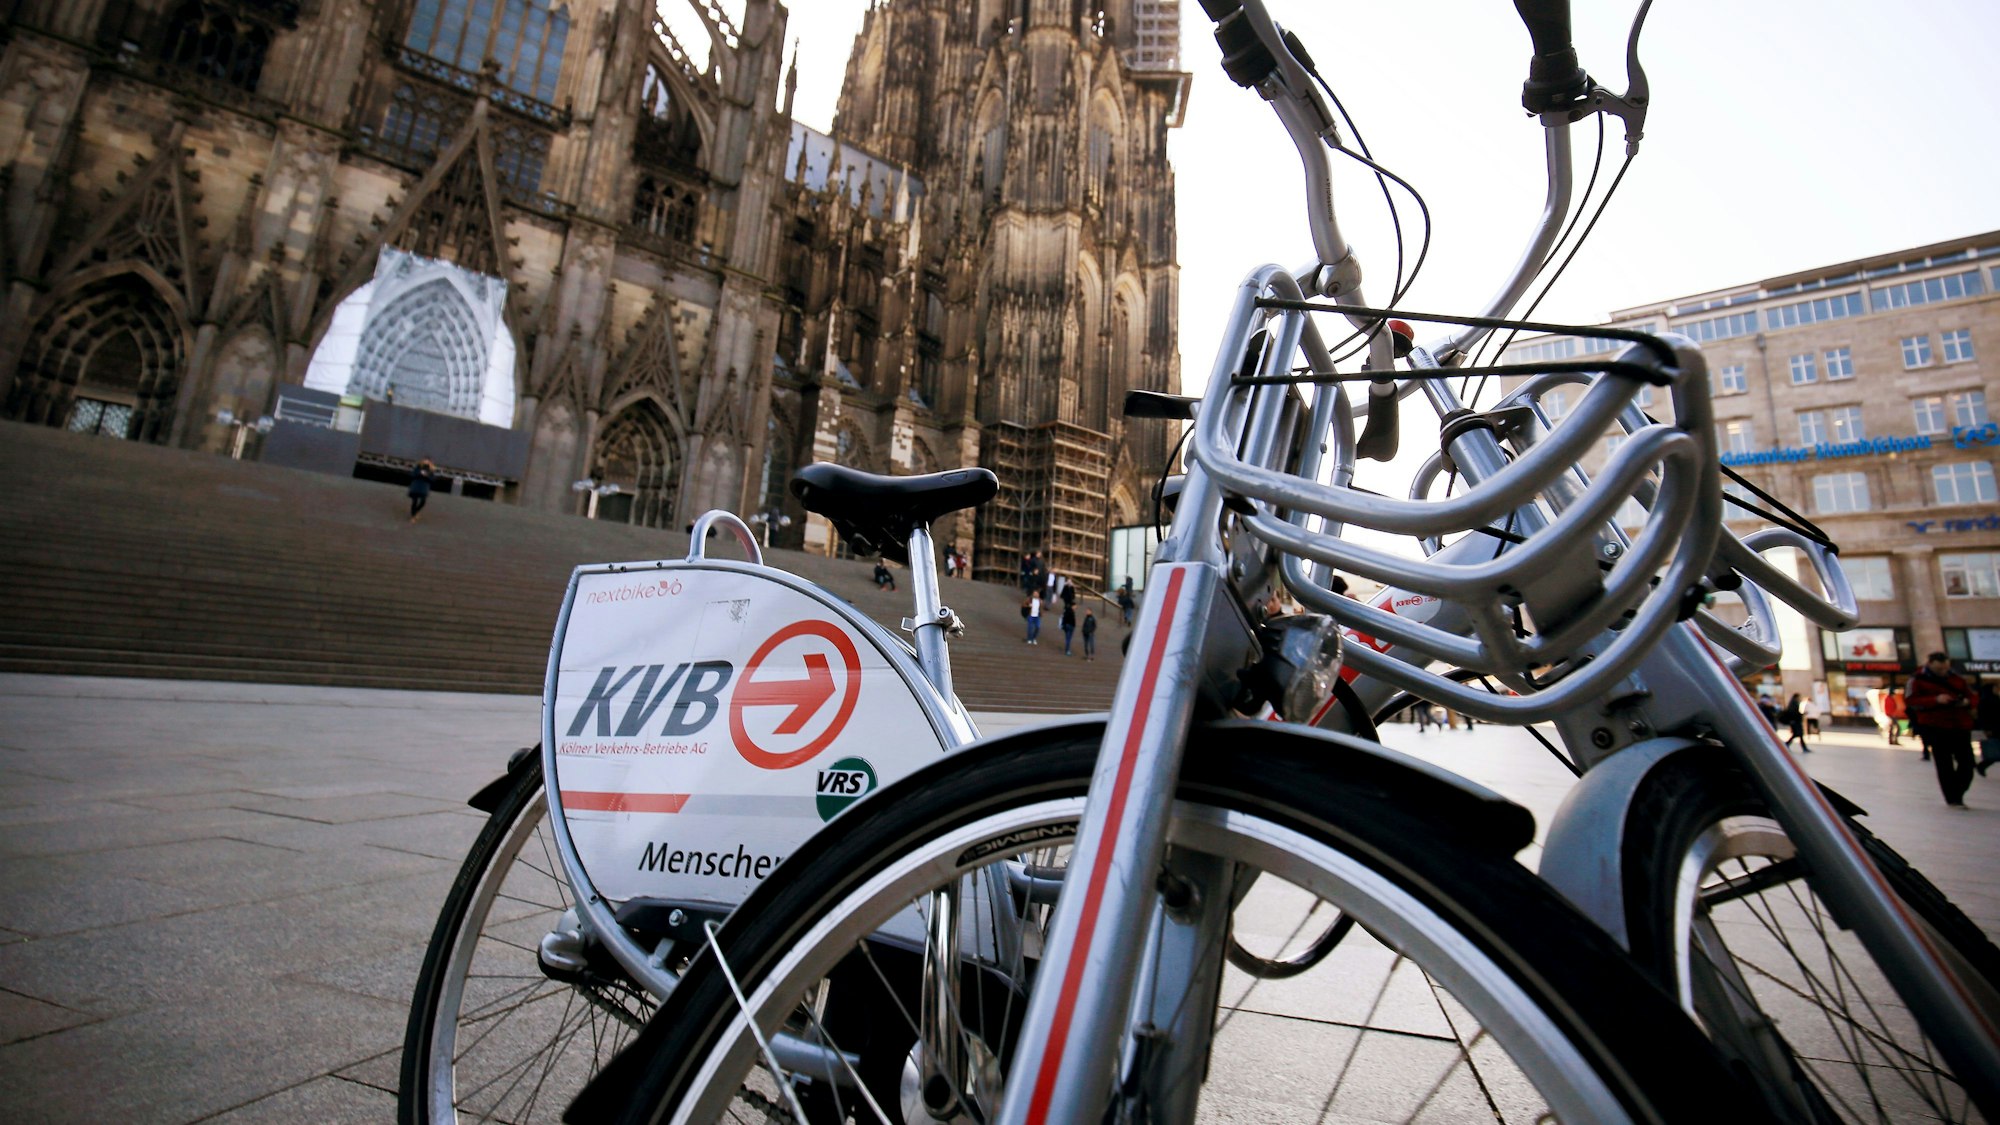 ARCHIV - Ein Leihfahrräder der Kölner Verkehrs-Betriebe (KVB) stehen am 13.02.2017 in Köln (Nordrhein-Westfalen) vor dem Dom.